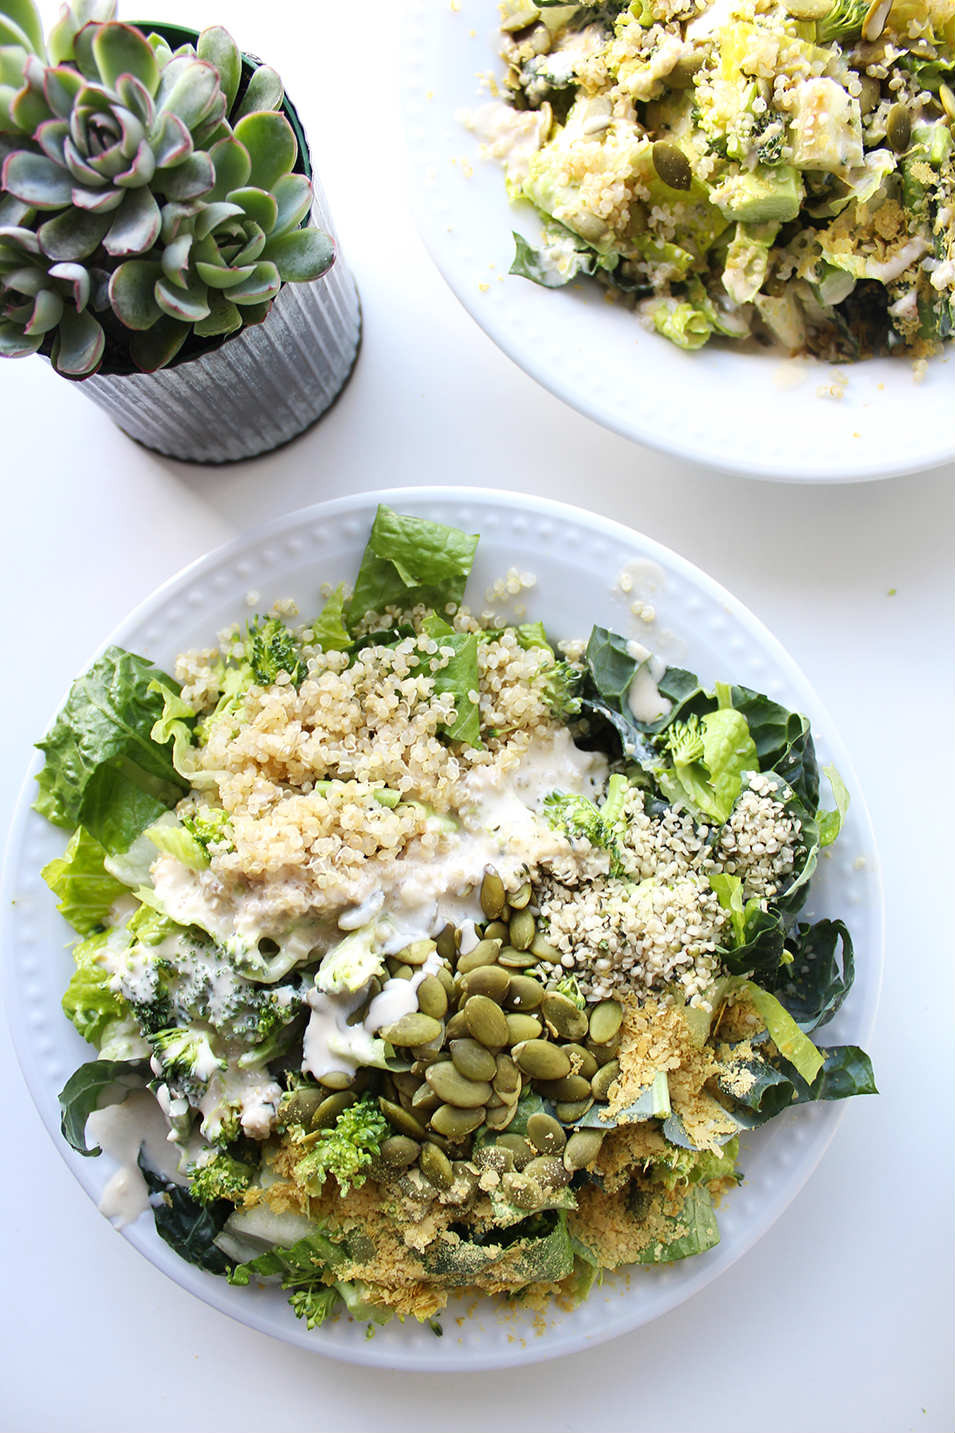 High Protein Vegetarian Salad
 50 Vegan High Protein Salads